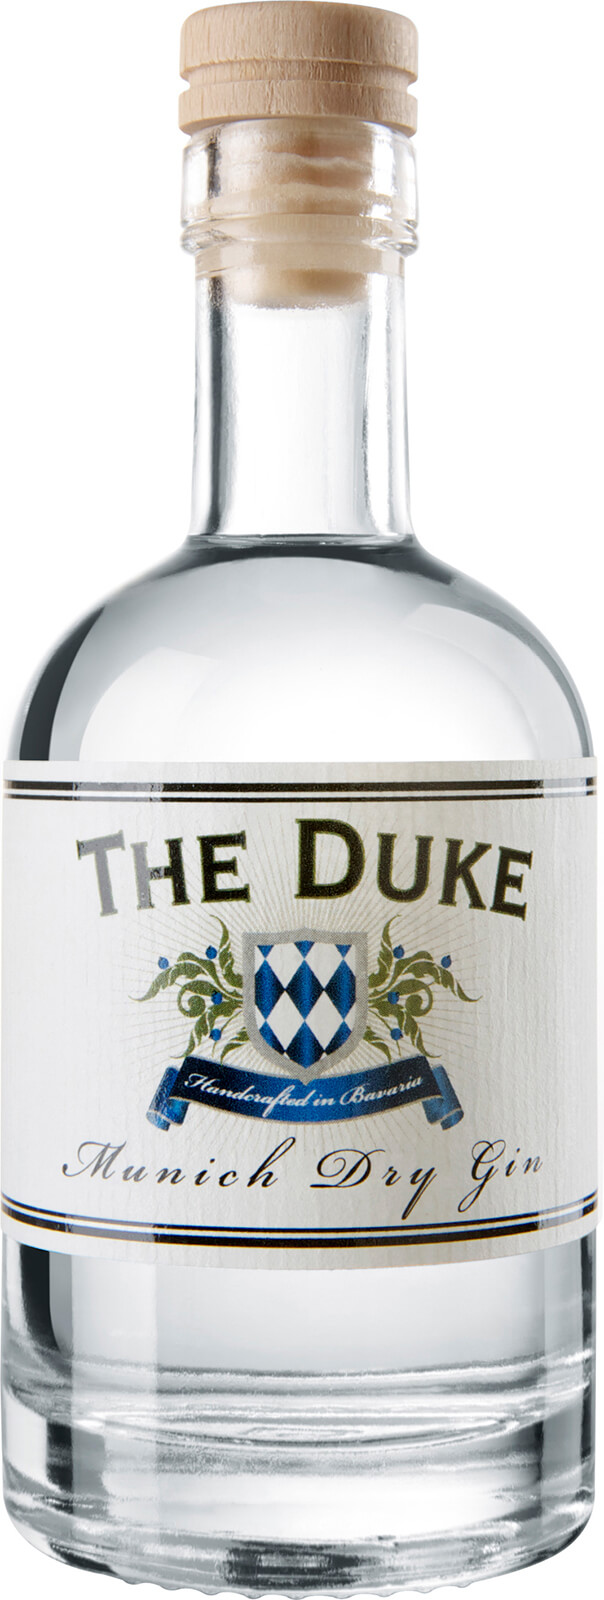 The Duke Destillerie The Duke Munich Dry Gin BIO 0,1 Liter 45%